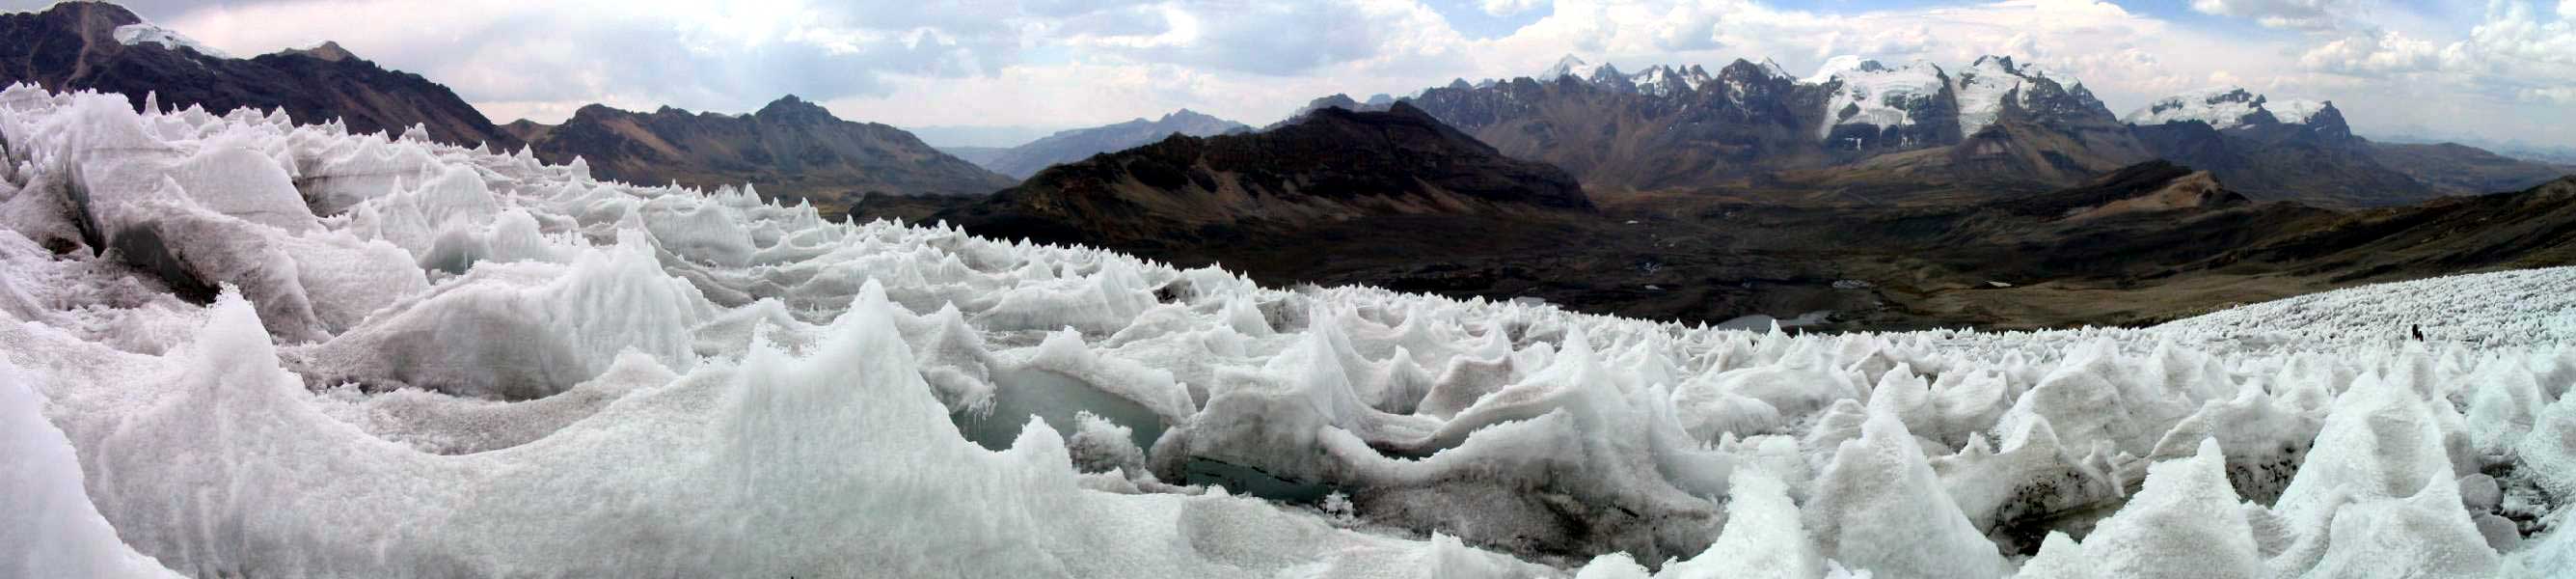 Vista panorámica del glaciar del Nevado Pastoruri con el Raria (5576 m) y el Huarapasca (5418 m) al fondo 